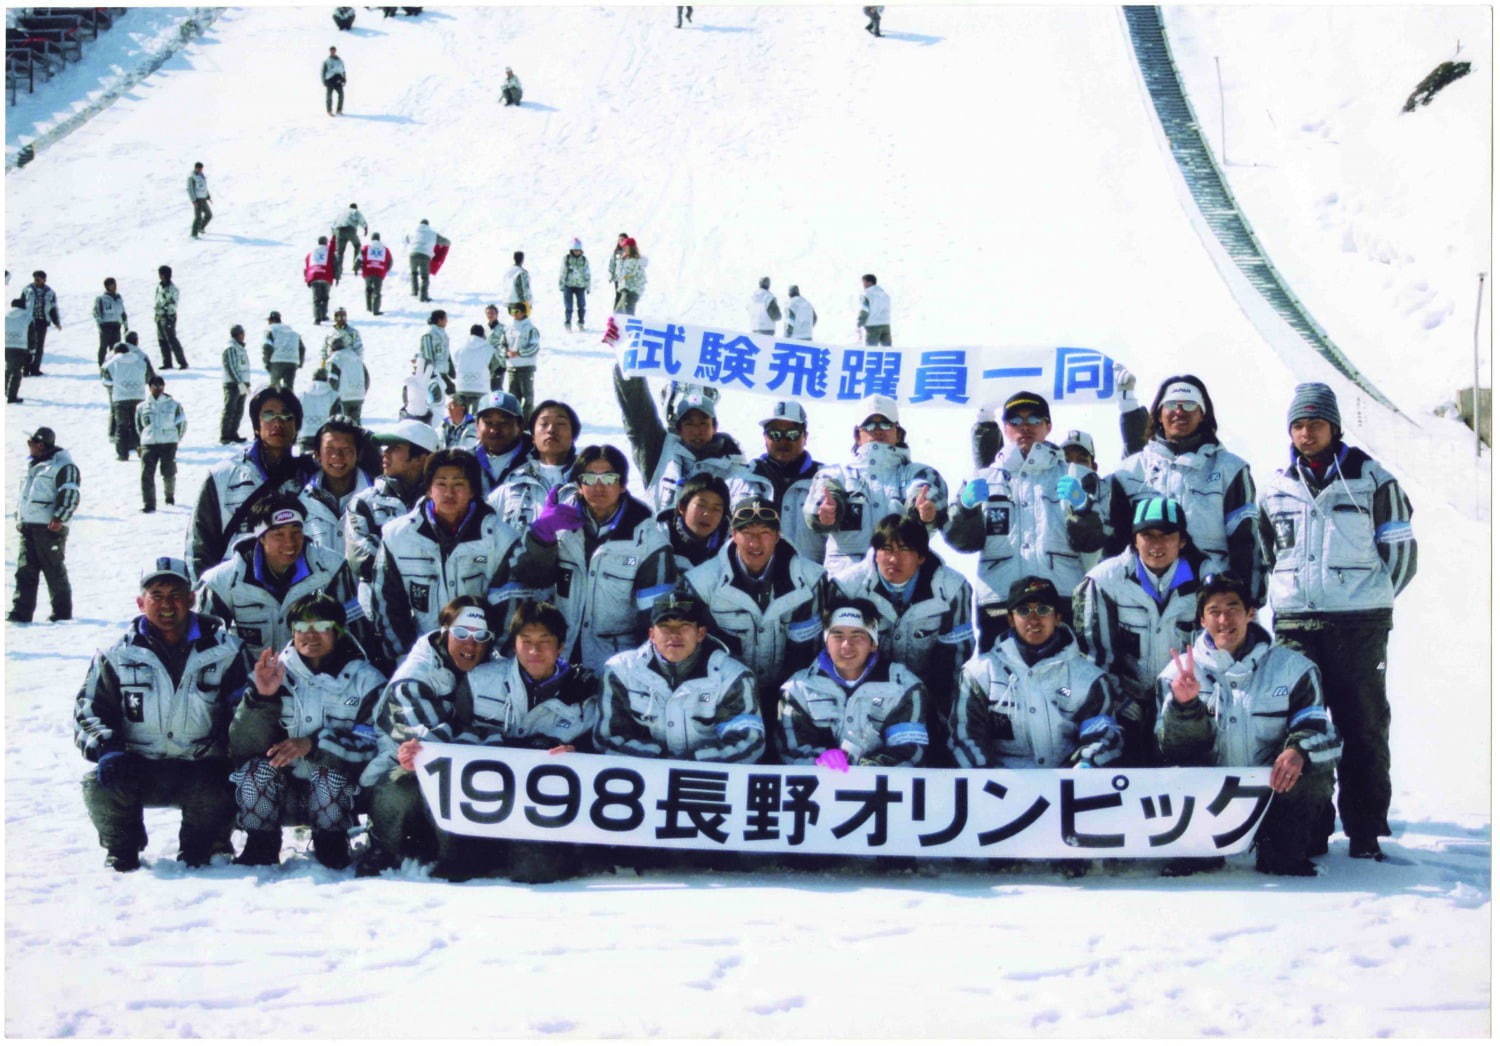 1998 年長野五輪・テストジャンパー集合写真